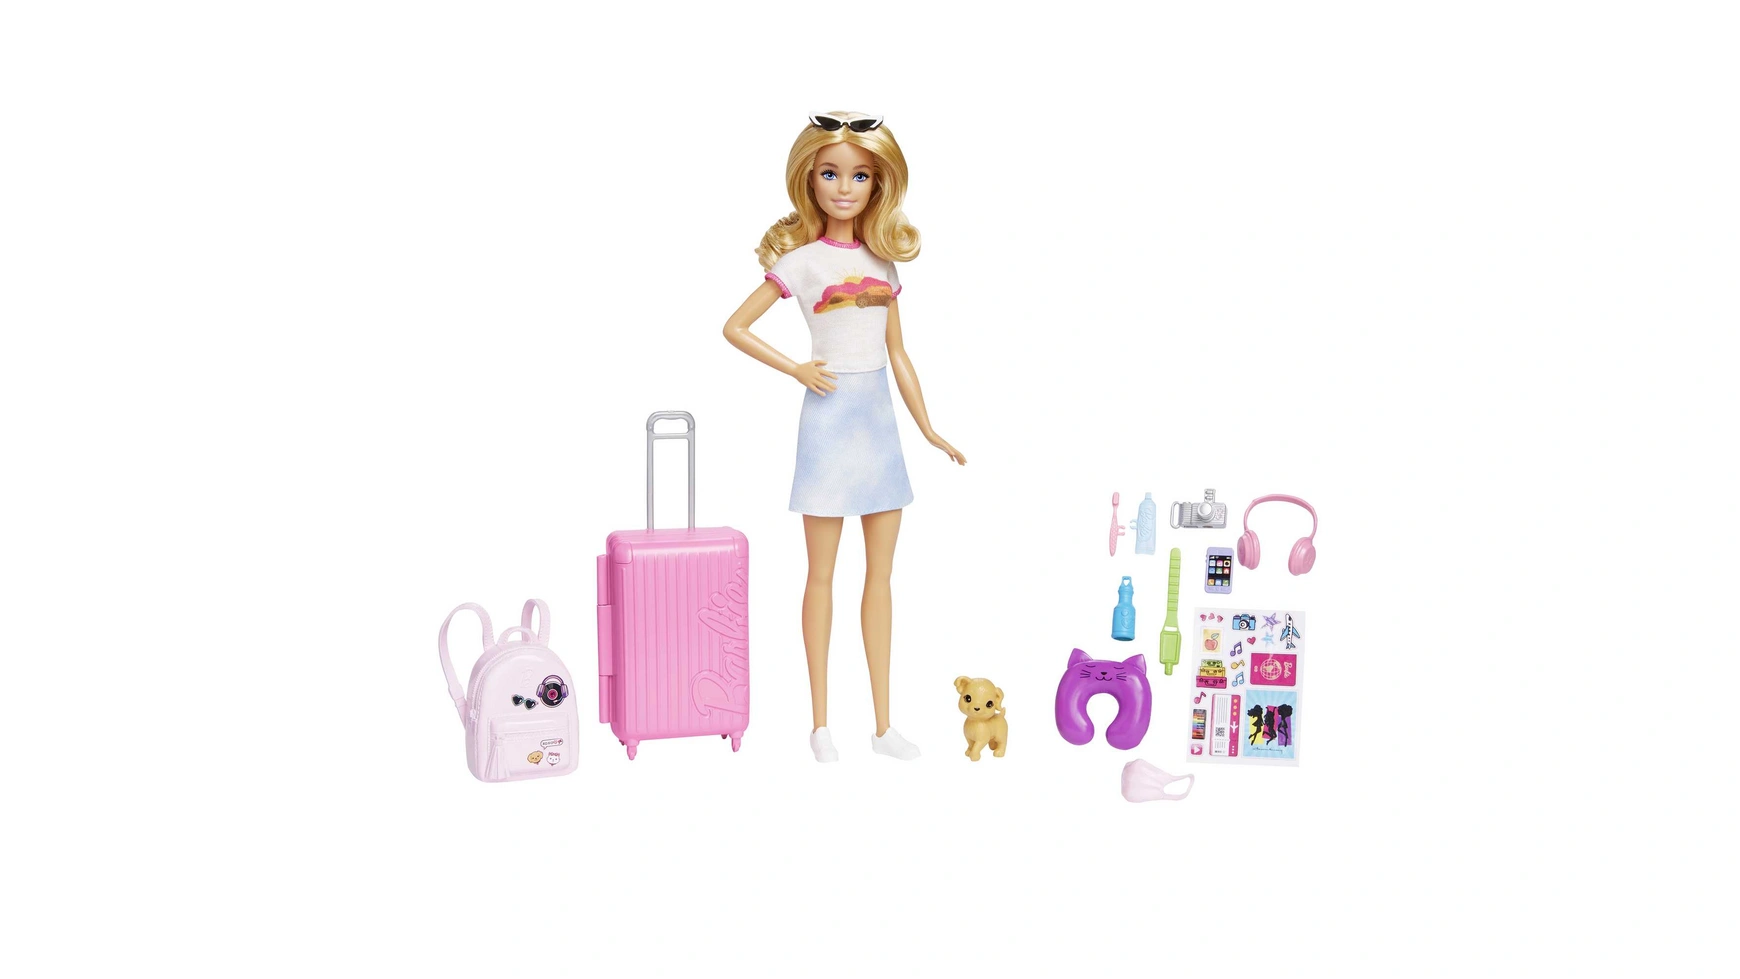 кукла с собачкой и аксессуарами Дорожная кукла Barbie (блондинка), кукла-одевалка с собакой и праздничными аксессуарами